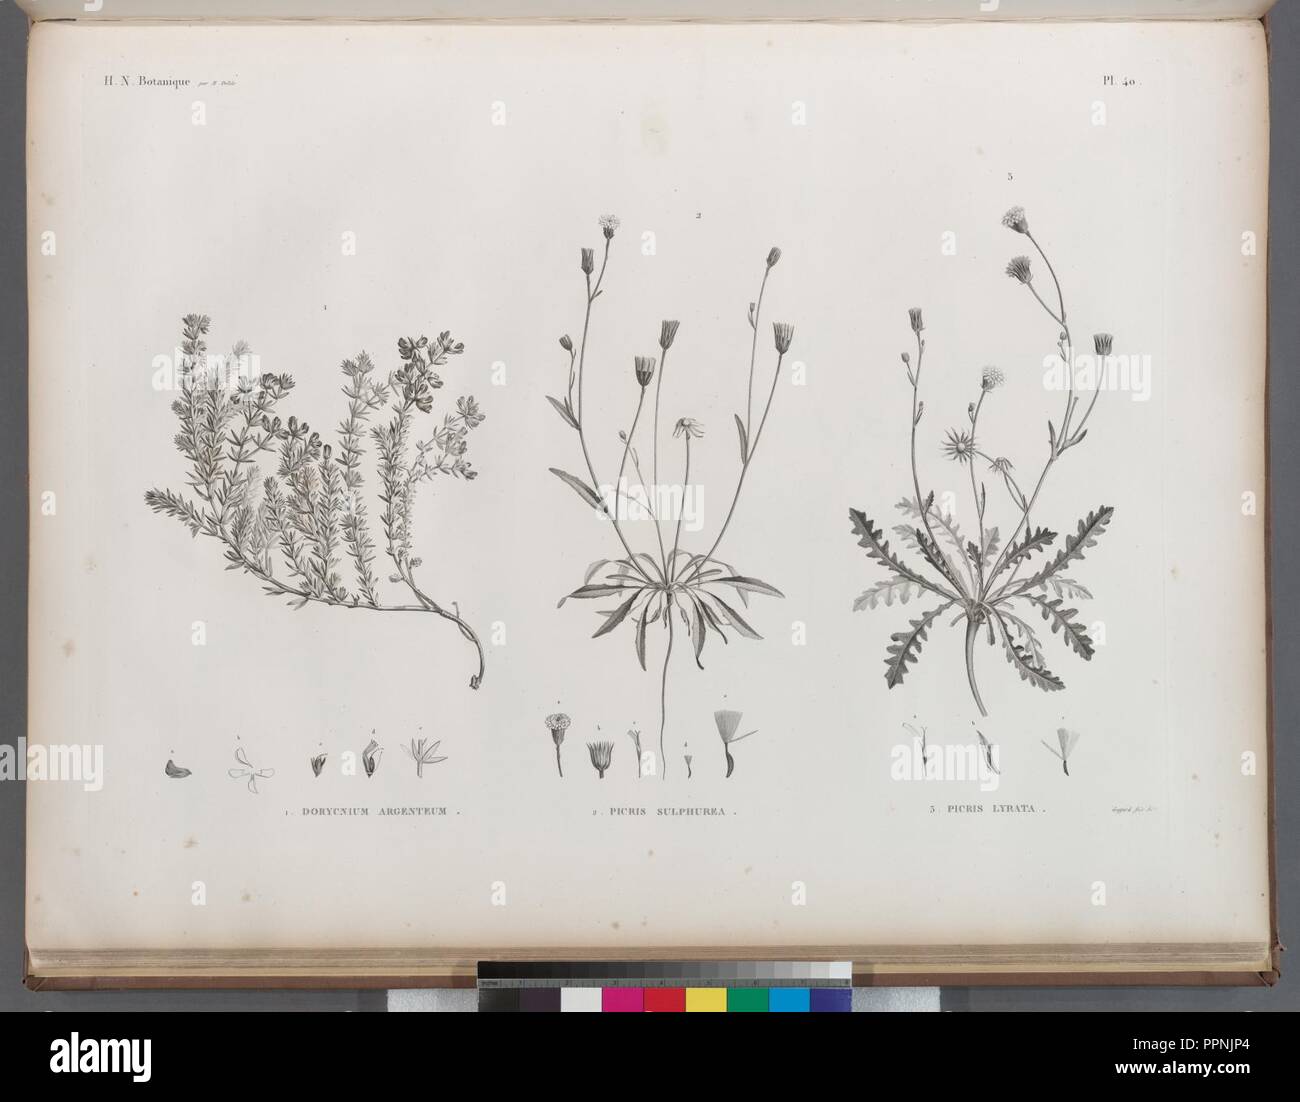 Botanique. 1. Dorycnium argenteum; 2. Picris sulphurea; 3. Picrus lyrata Stock Photo